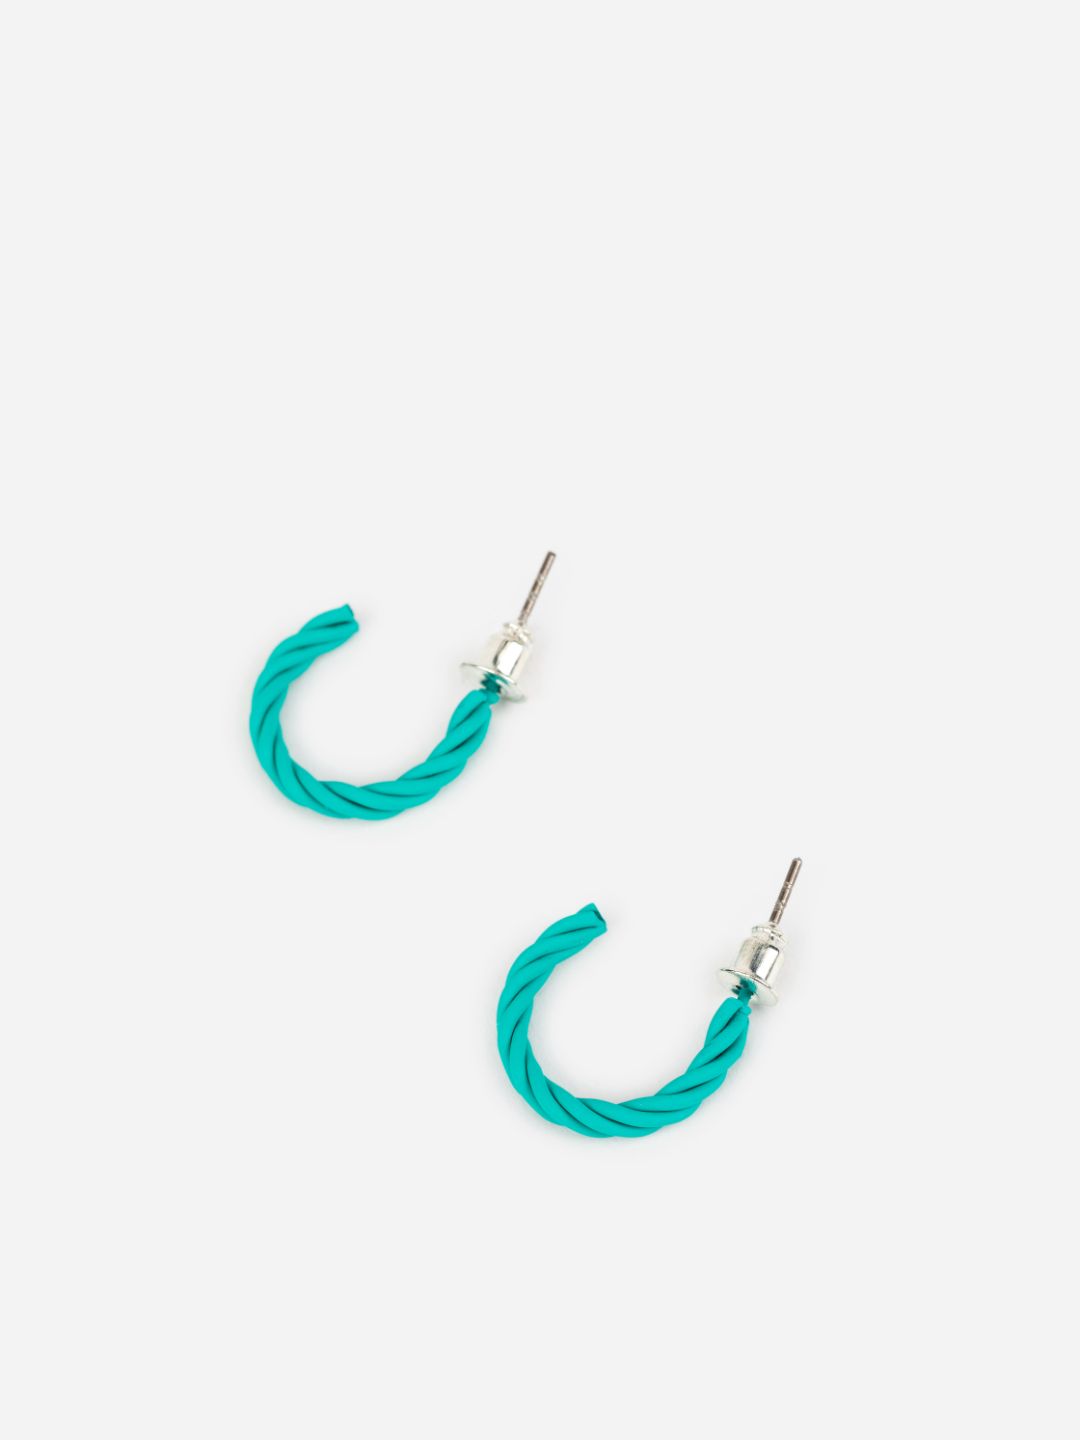 Twisted Pattern Blue Pink Grey Half-Hoop Earrings Set of 3